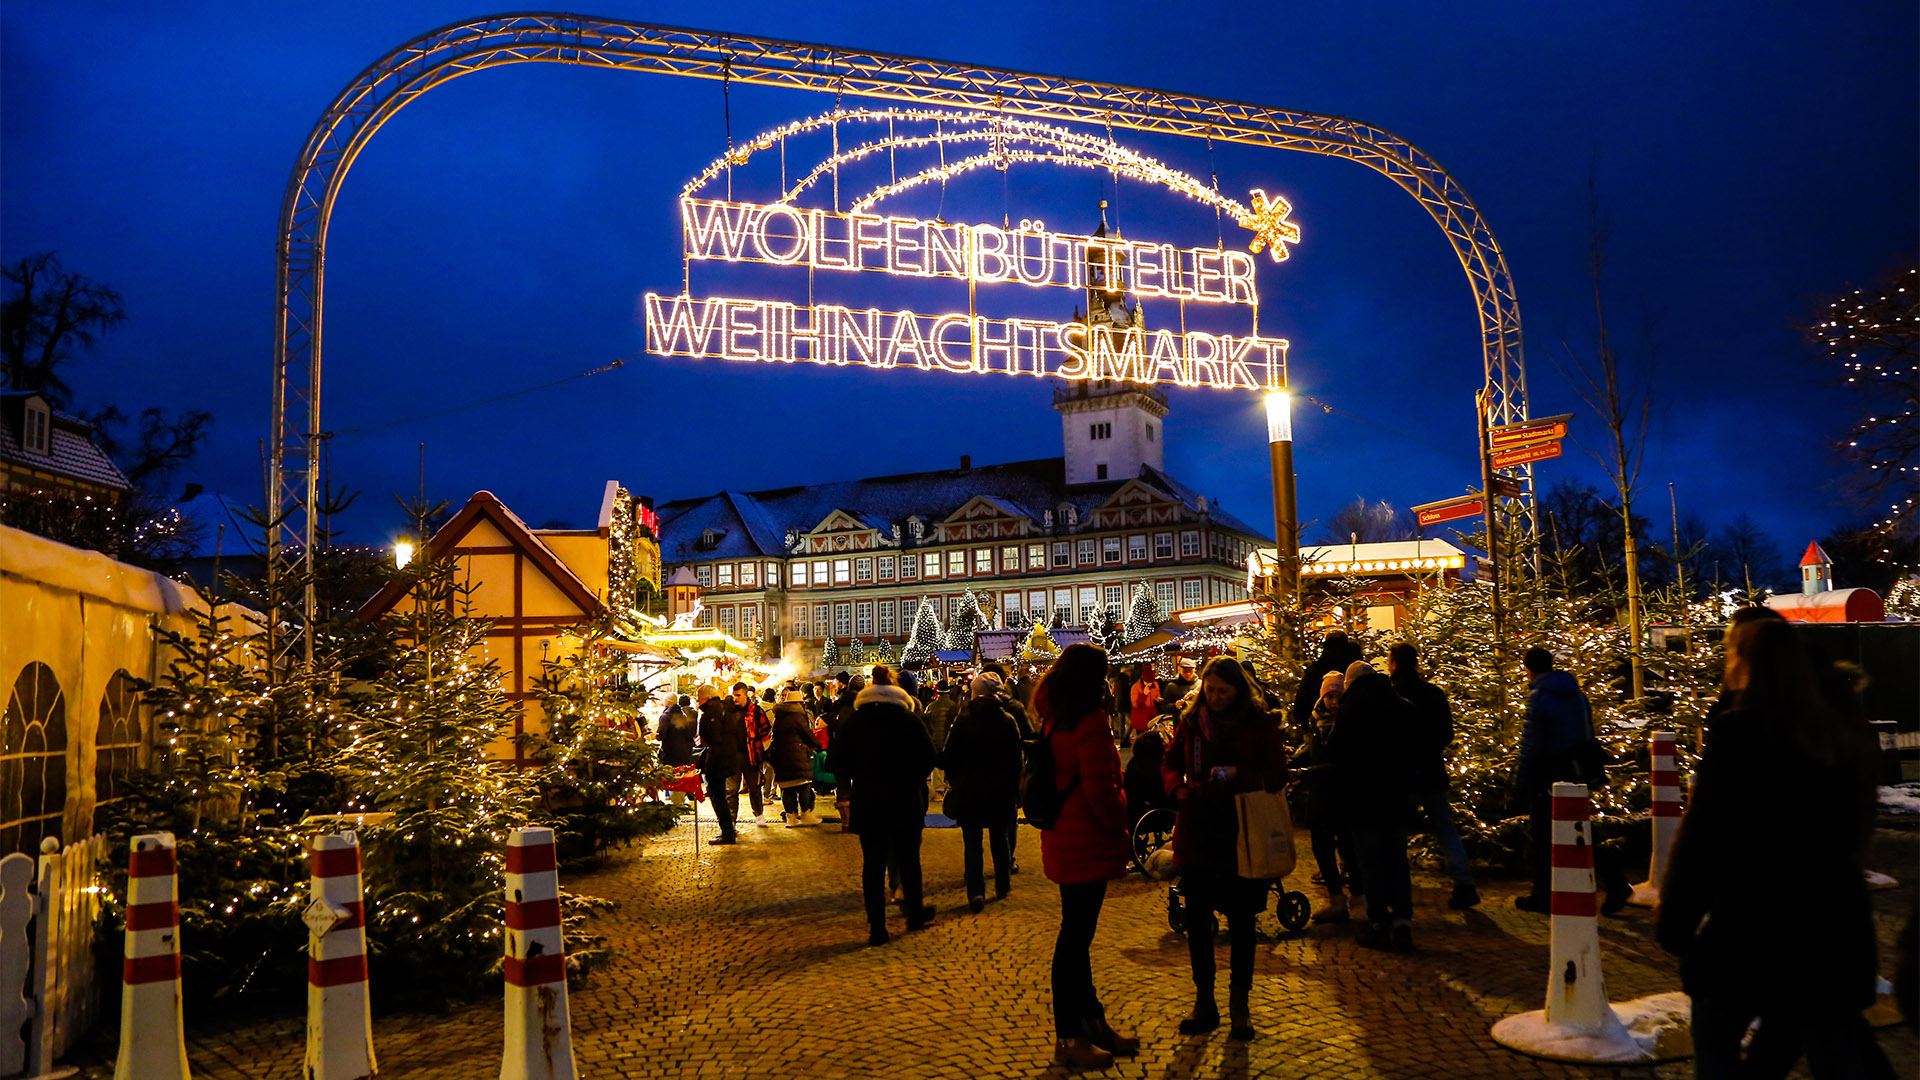 Der Eingang zum Weihnachtsmarkt, über dem der Schriftzug Wolfenbütteler Weihnachtsmarkt hängt. Man sieht viele beleuchtete Tannen, Verkaufsbuden, Menschen, im Hintergrund das Wolfenbütteler Schloss